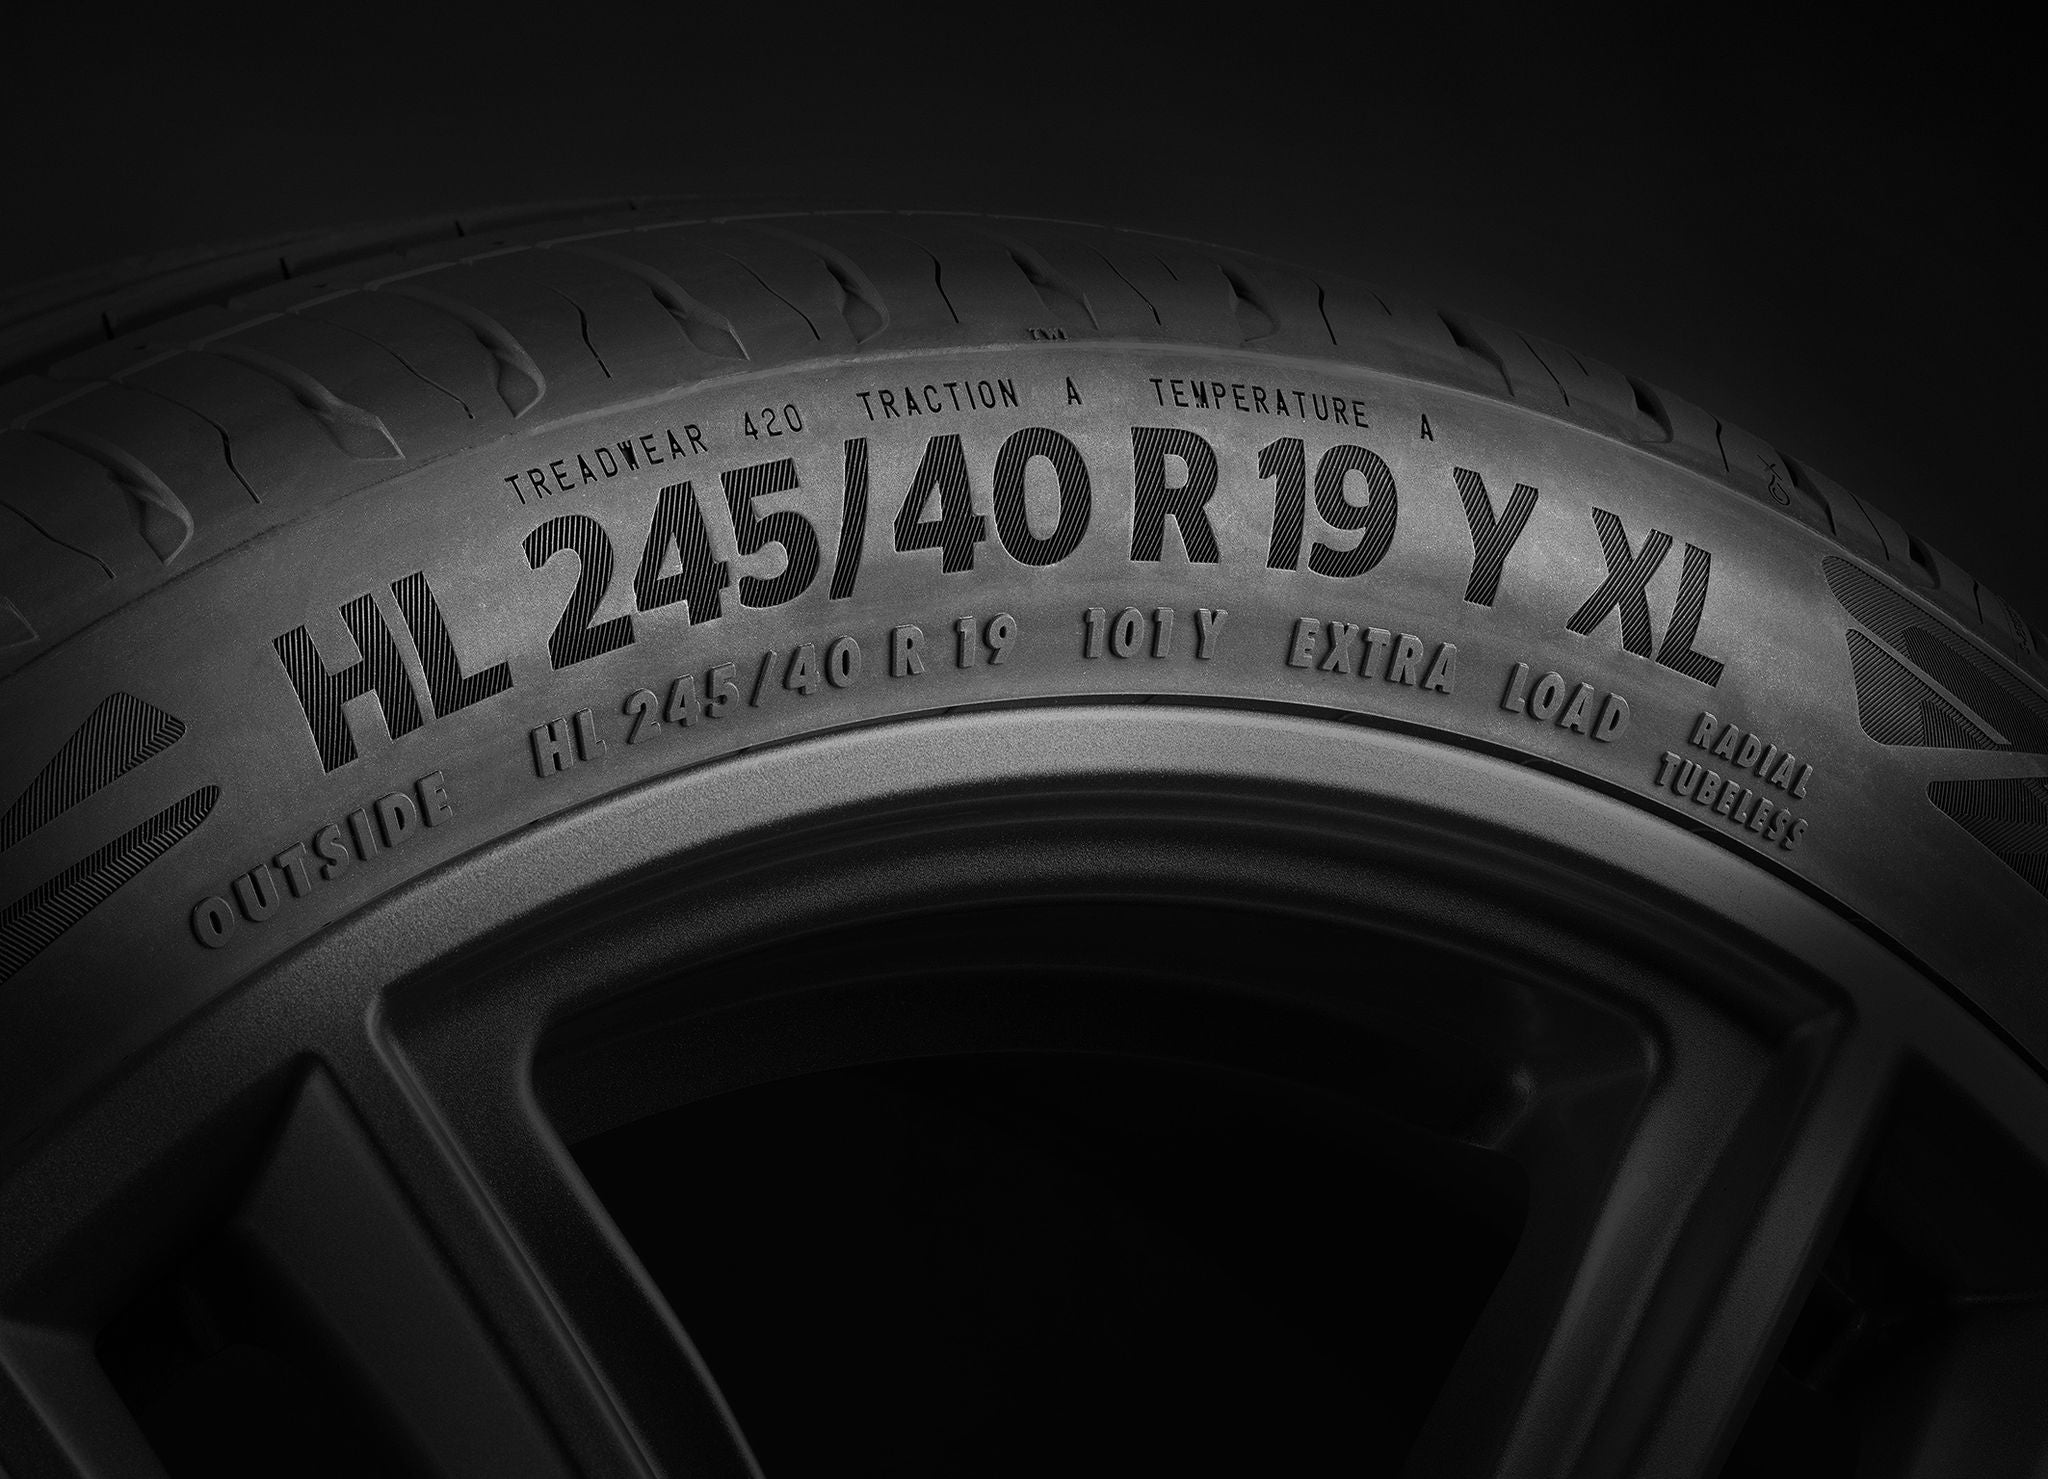 Continental produziert seit 2021 Pkw-Reifen mit HL-Lastindexkennung. Diese Reifen haben eine höhere Tragfähigkeit und sind damit besonders für E-Fahrzeuge mit ihren schweren Batterien ausgelegt. 